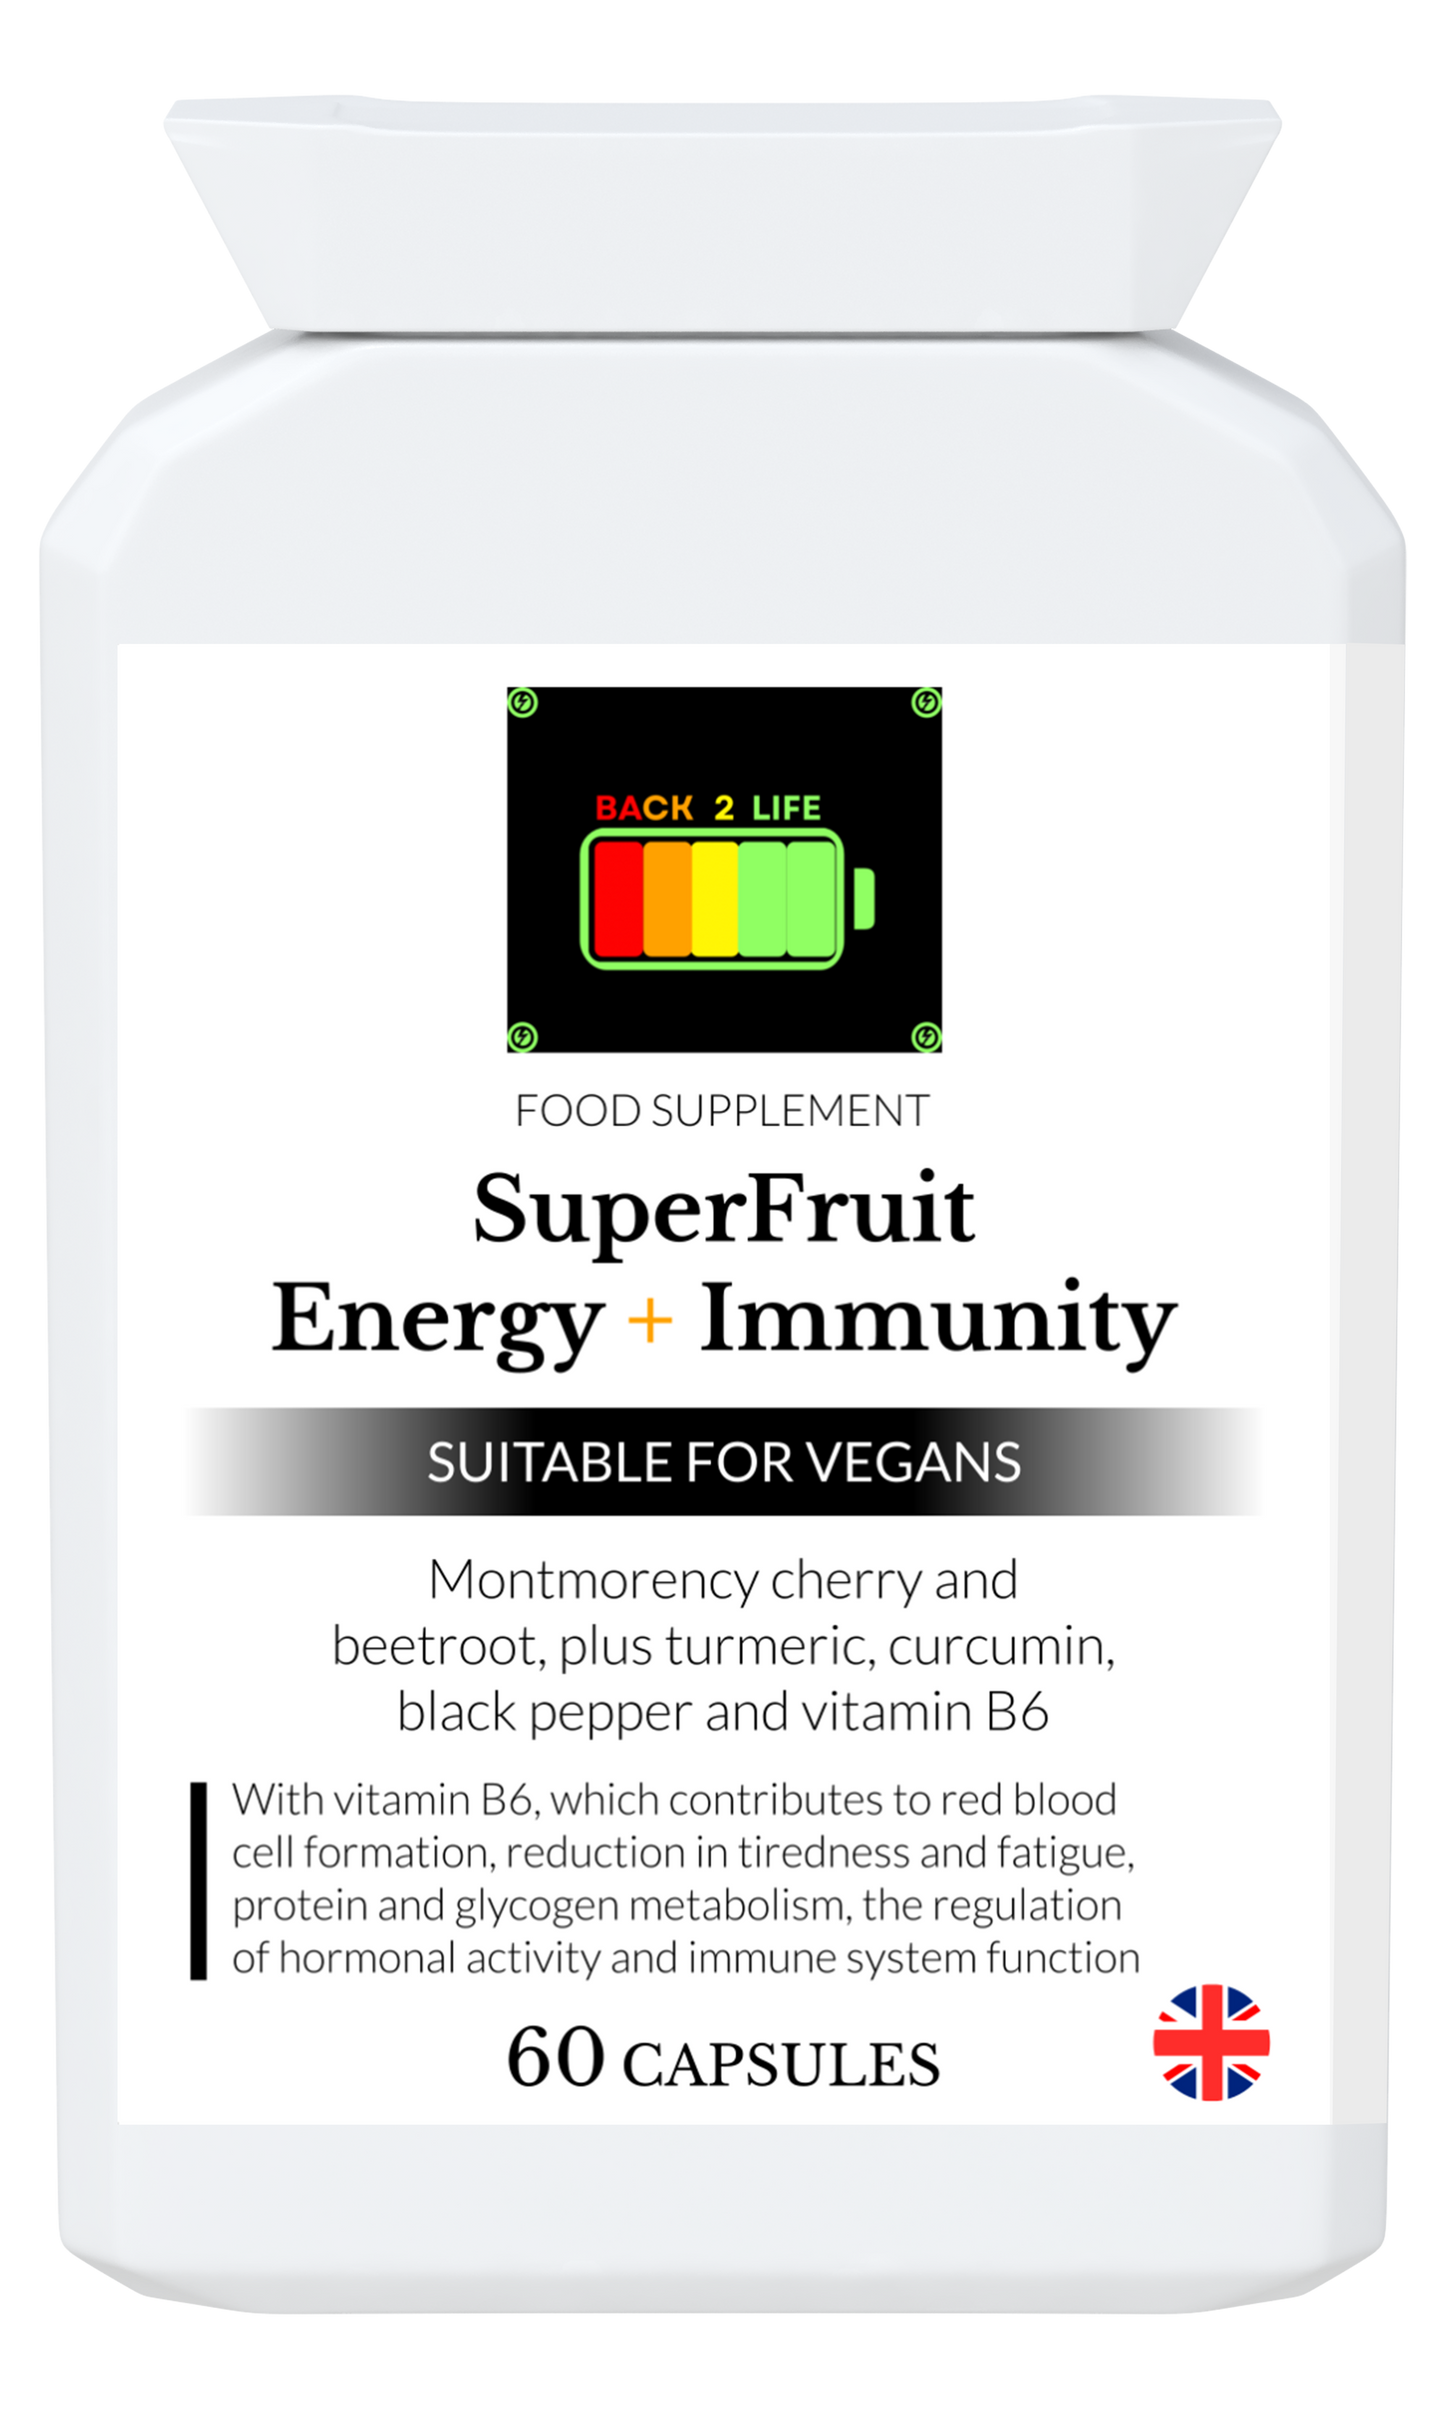 SuperFruit Energy + Immunity